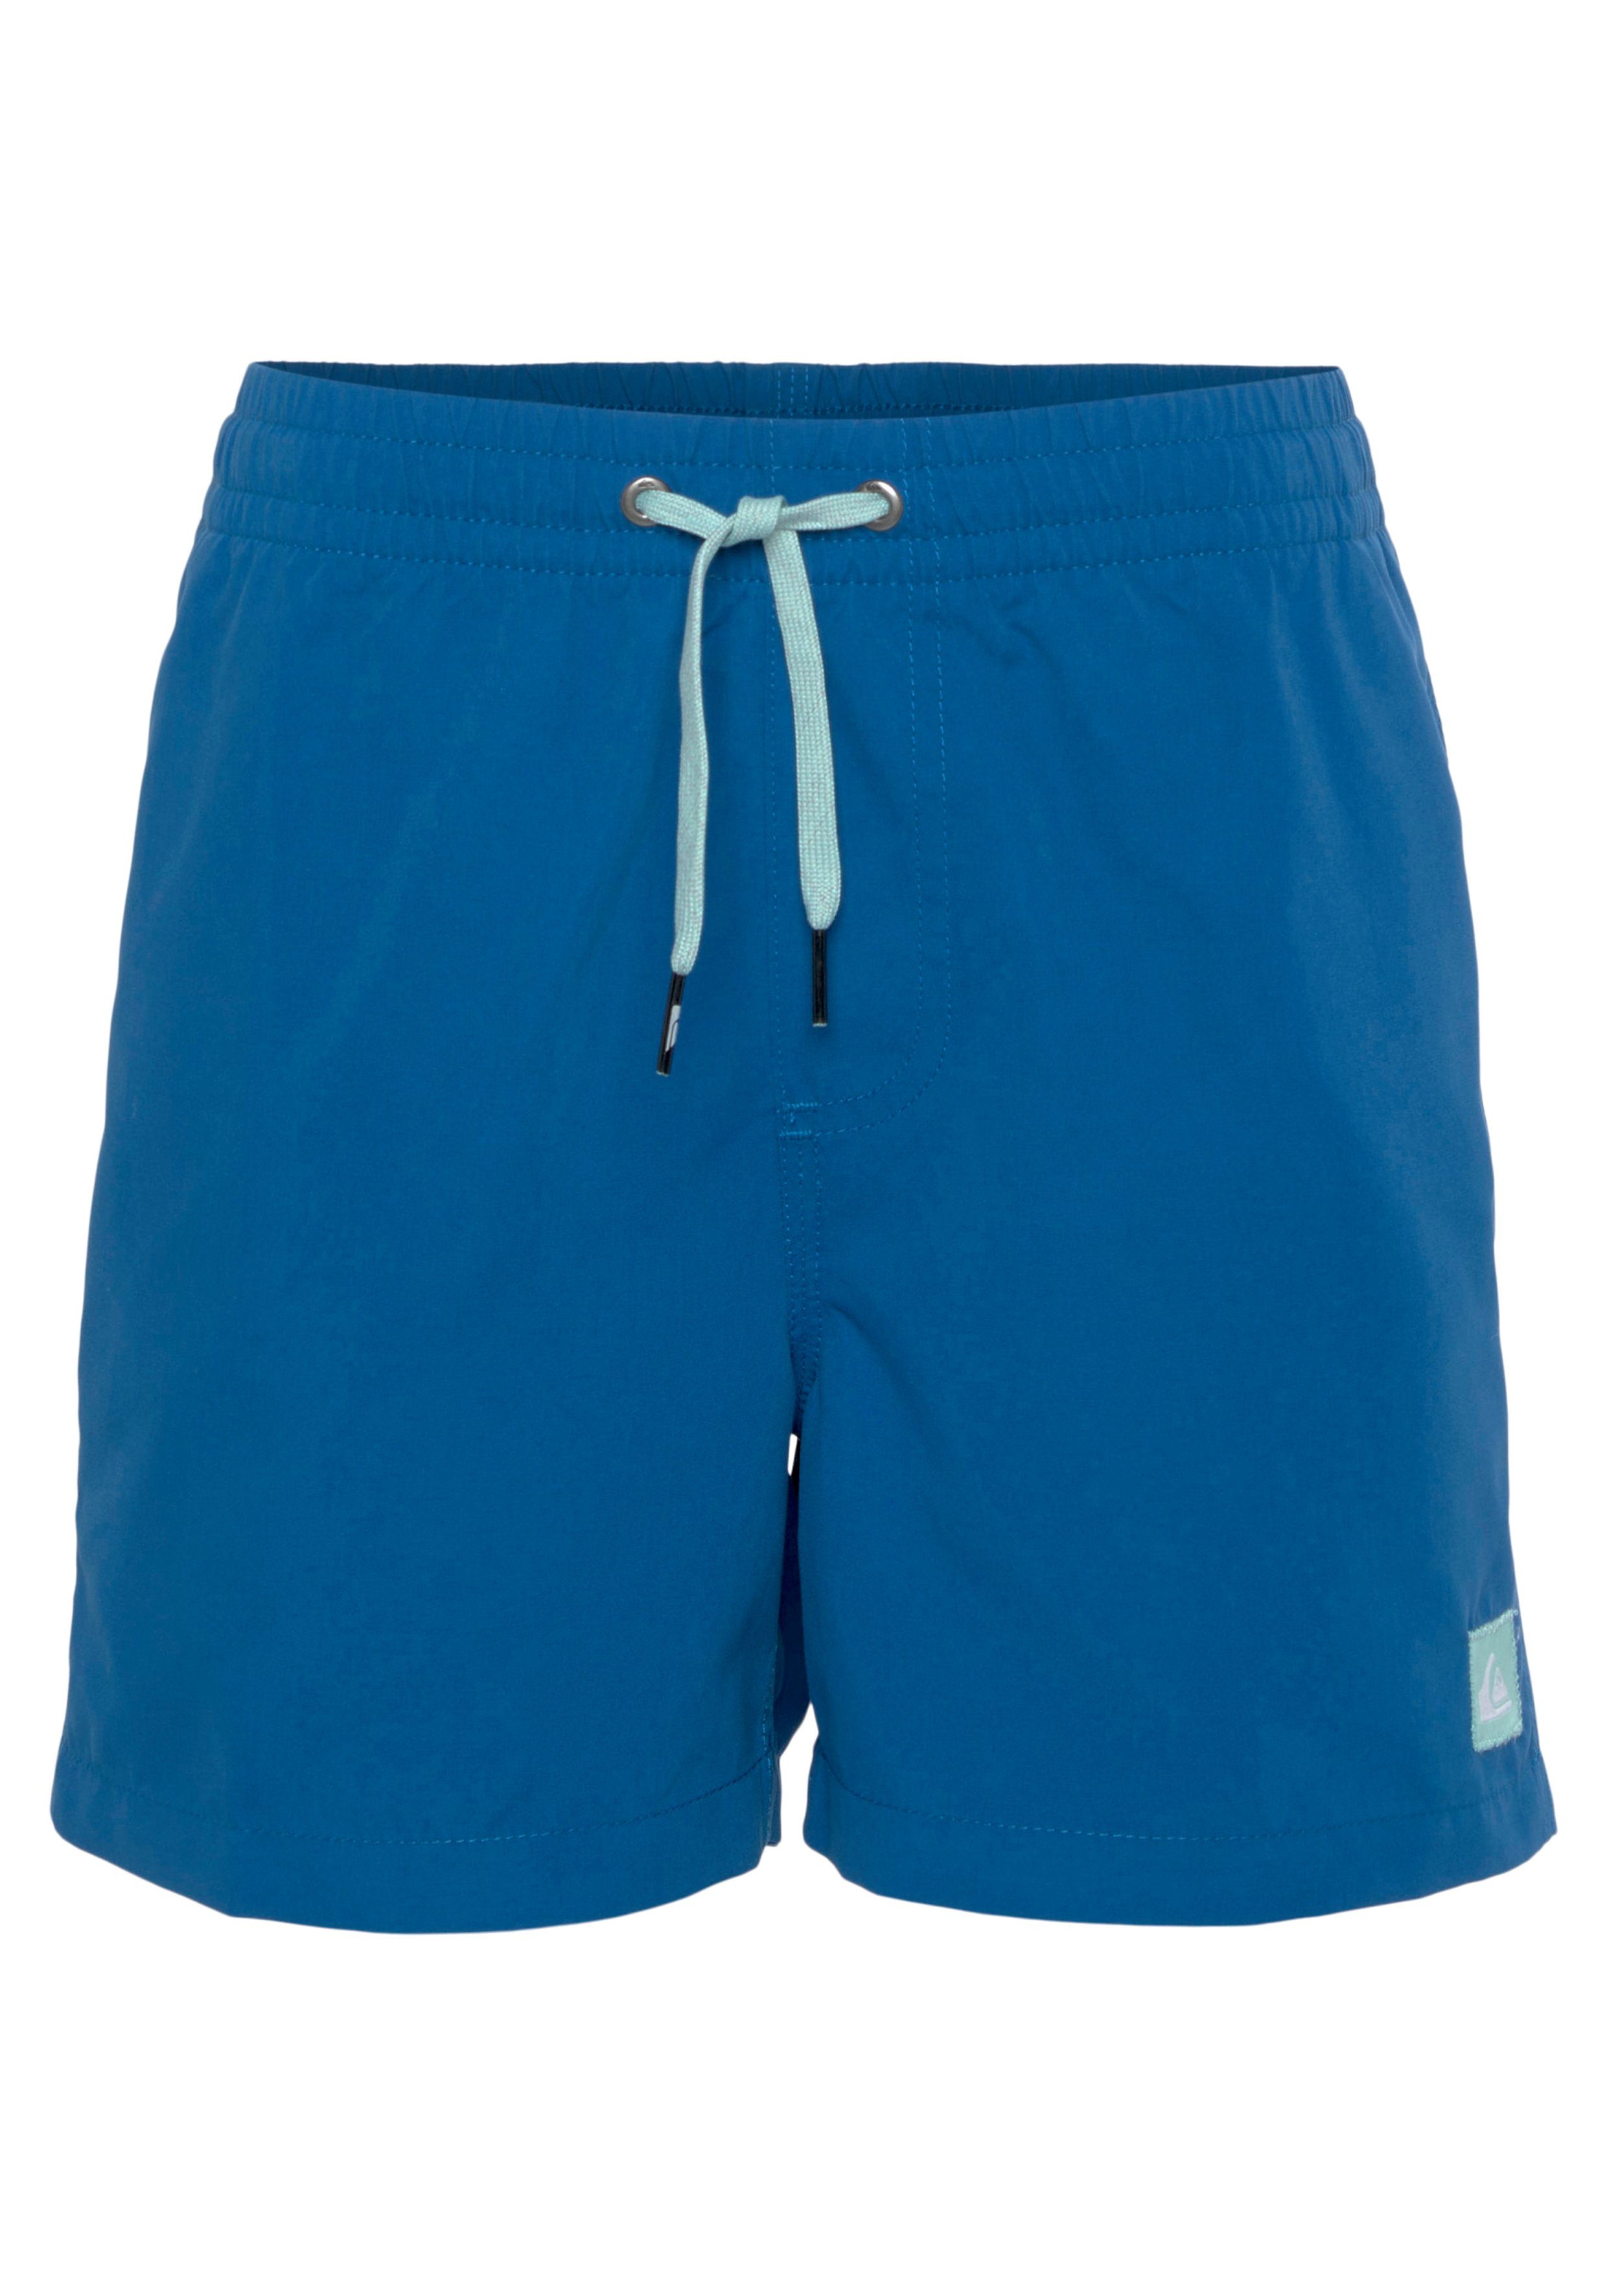 Quiksilver Badeshorts Jungen Swim und Beach Shorts brt0-snorkel blue